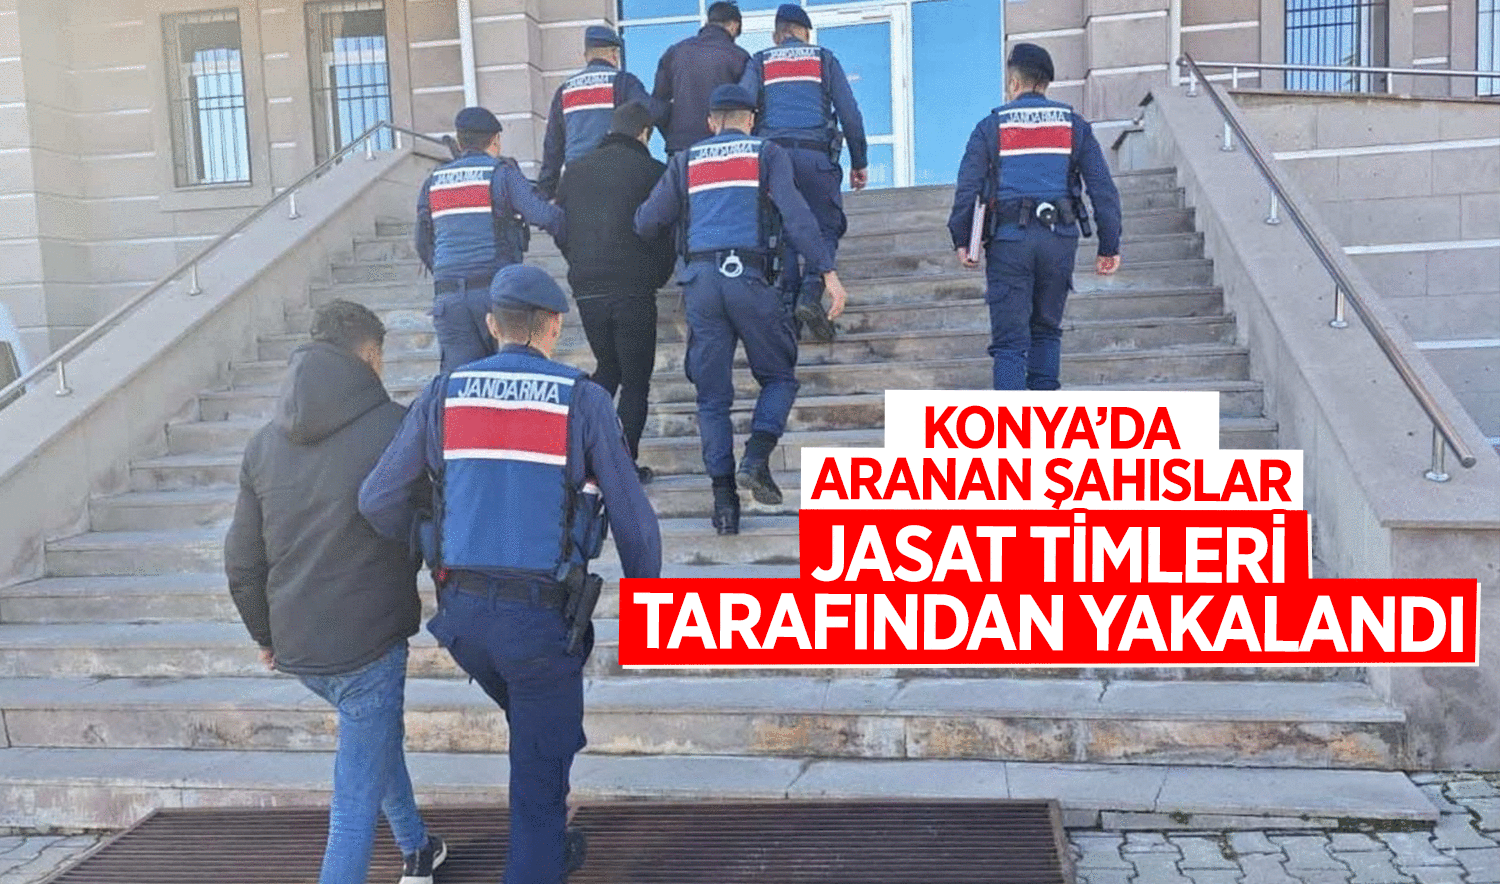 Konya’da aranan şahıslar JASAT tarafından yakalandı